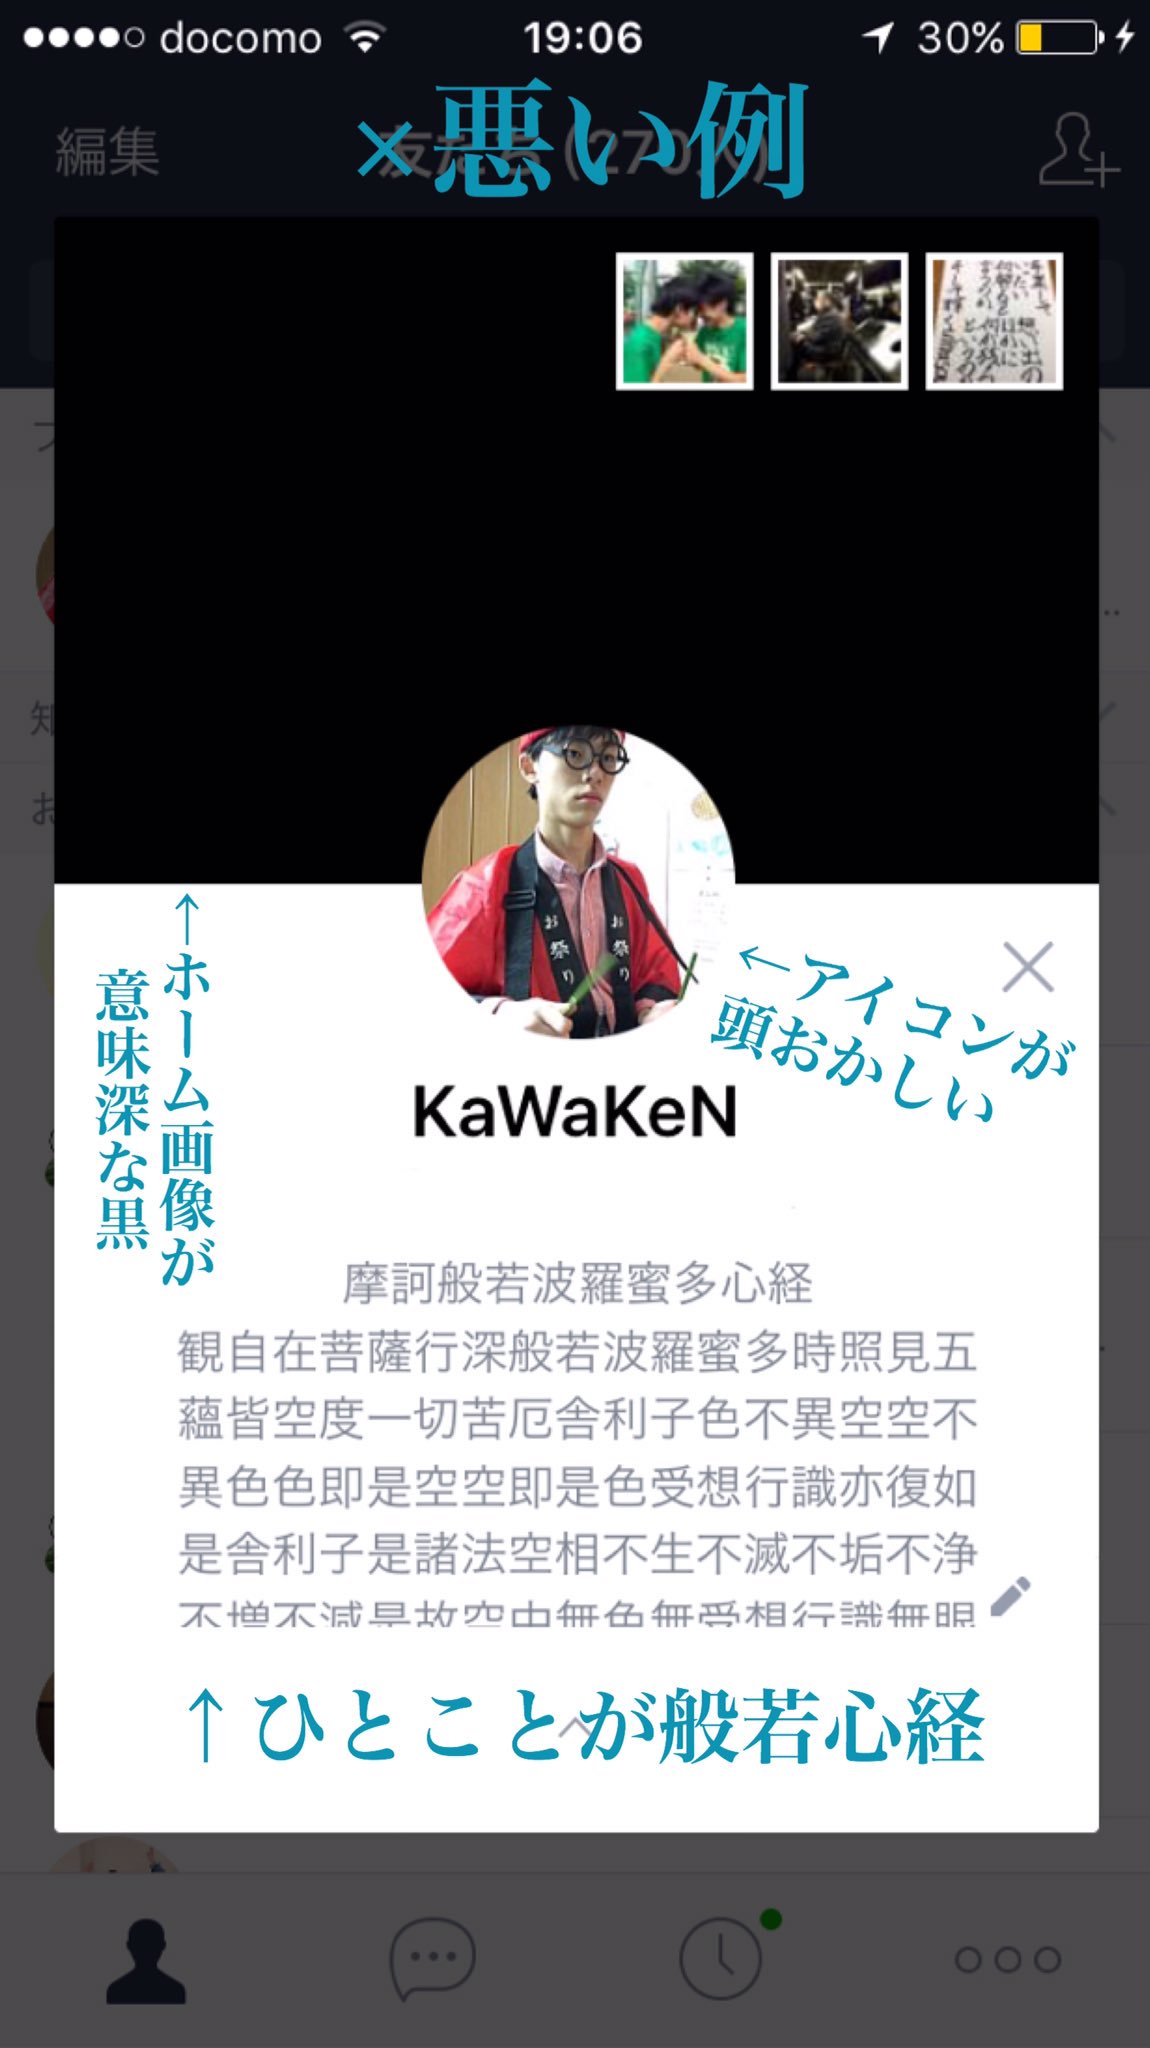 Kawaken 新しいクラスのlineグループで好印象を与えるための Lineプロフィール講座 良い例と悪い例を紹介します T Co Ntxipp9pjk Twitter